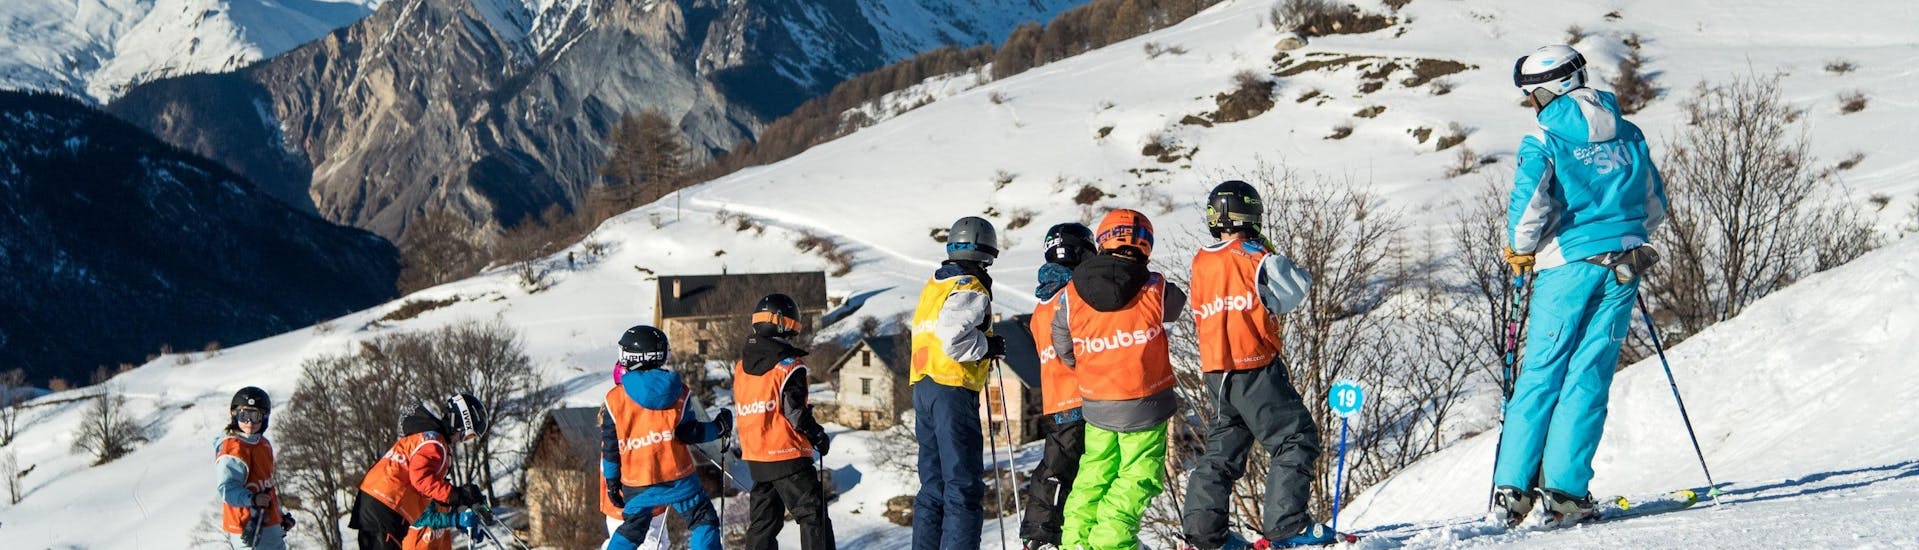 De jeunes skieurs se trouvent dans un magnifique paysage hiver pendant leur Cours de ski pour Enfants (8-15 ans) - Tout niveaux avec l'école de ski ESI Dévoluy.